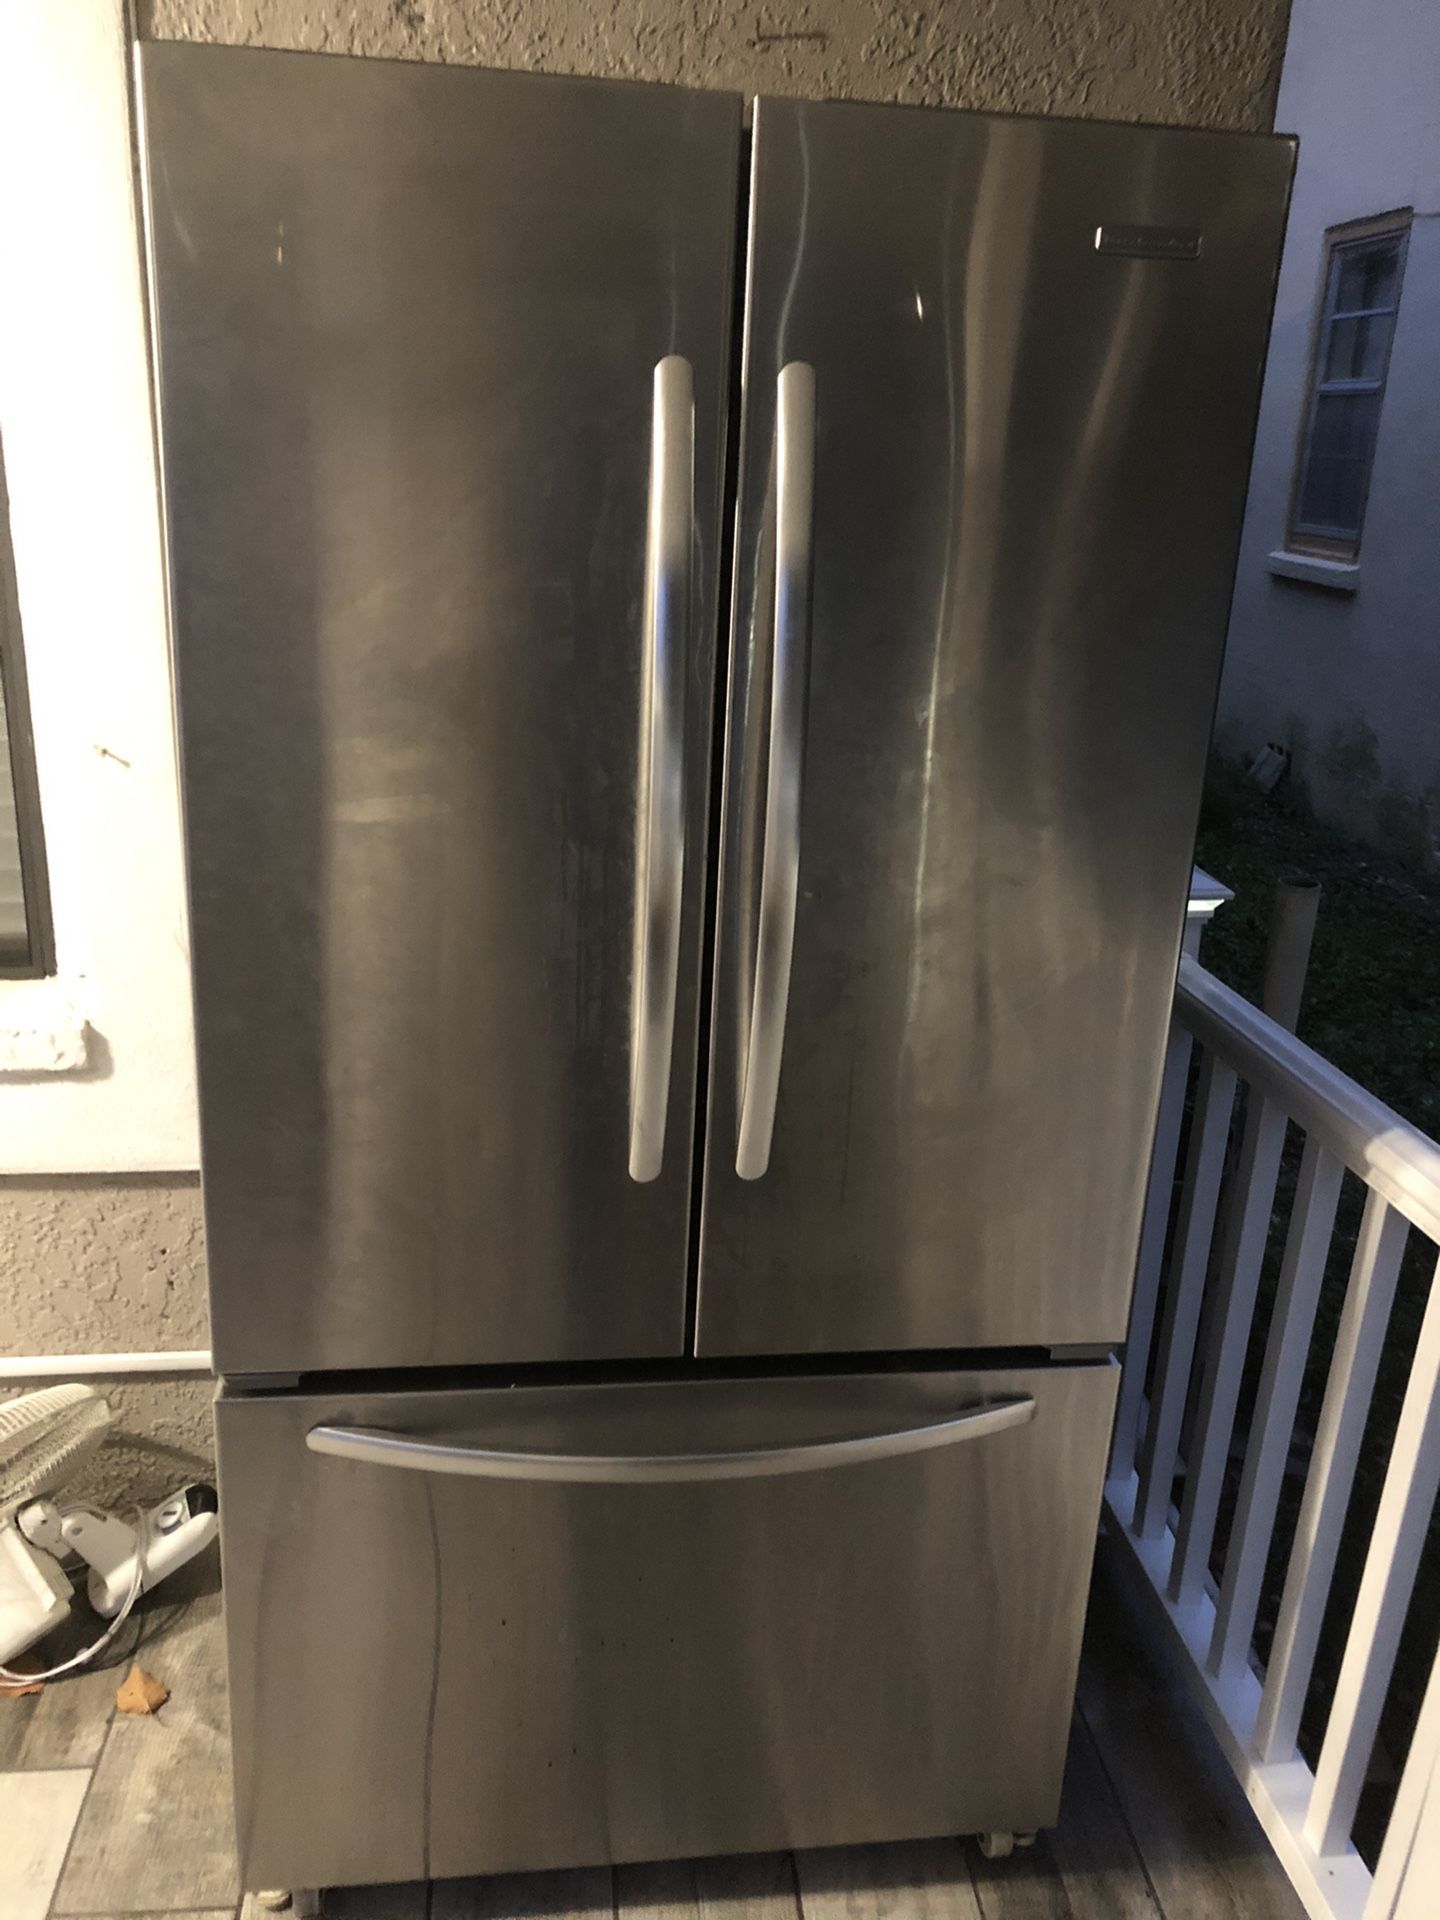 Refrigerator kitchen aid